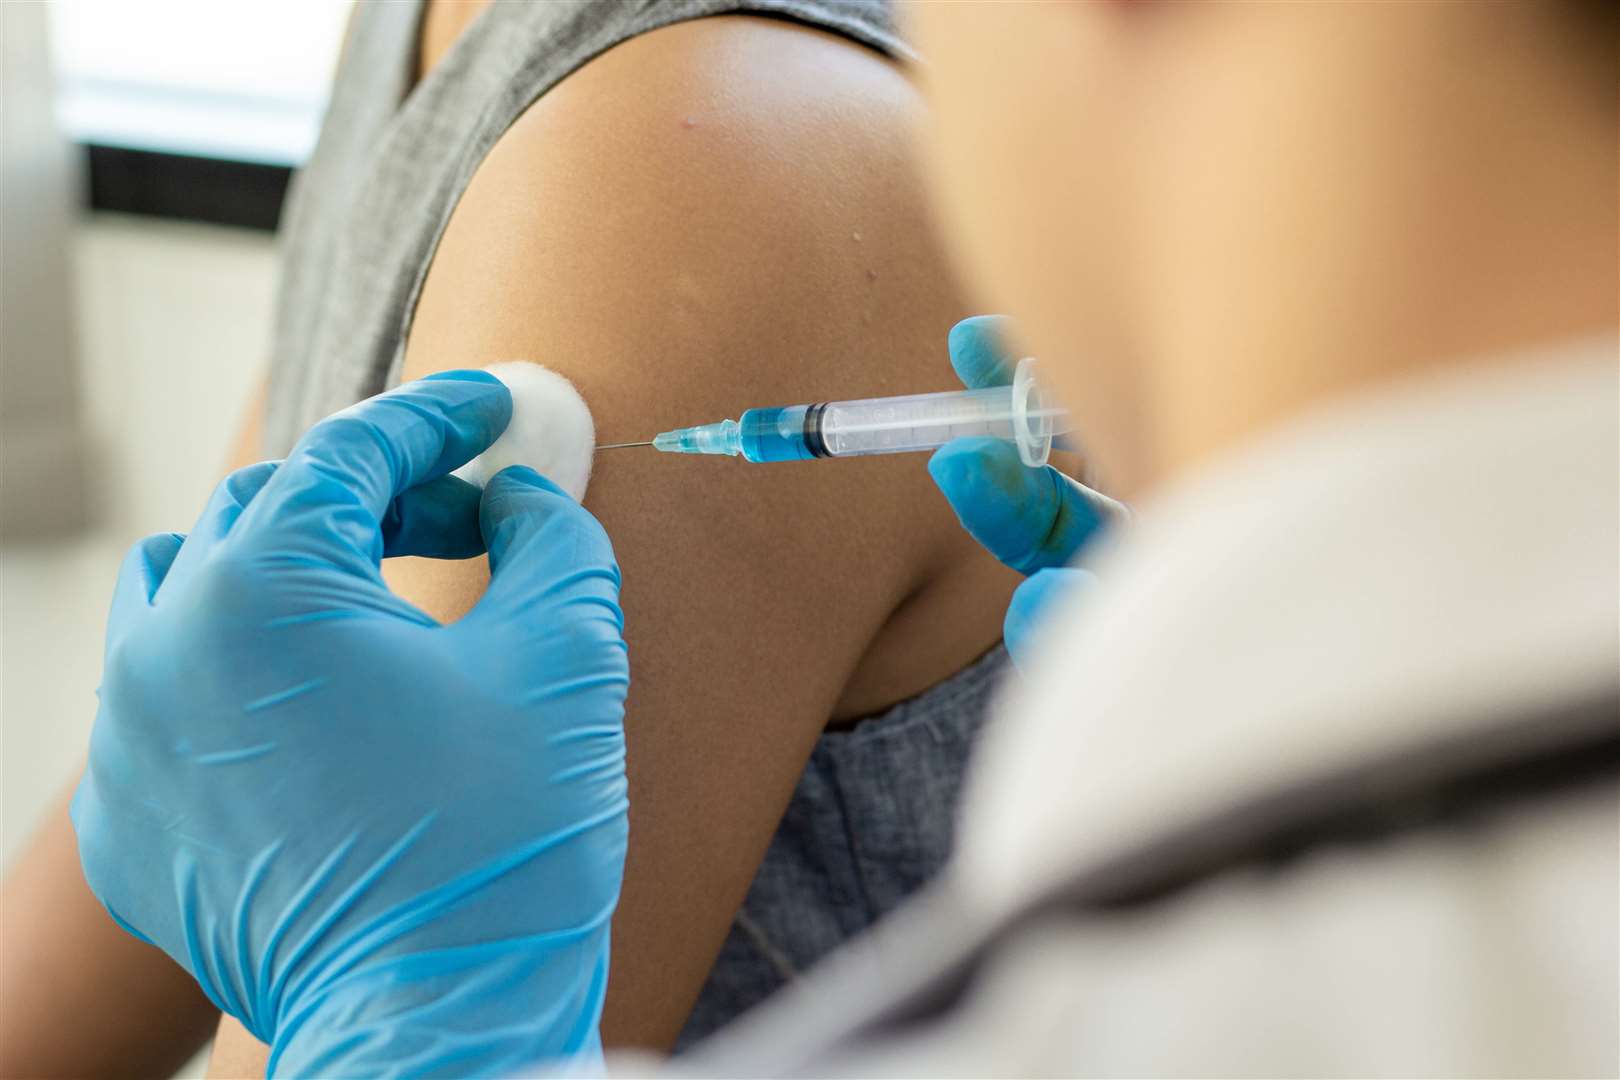 A Covid-19 vaccination